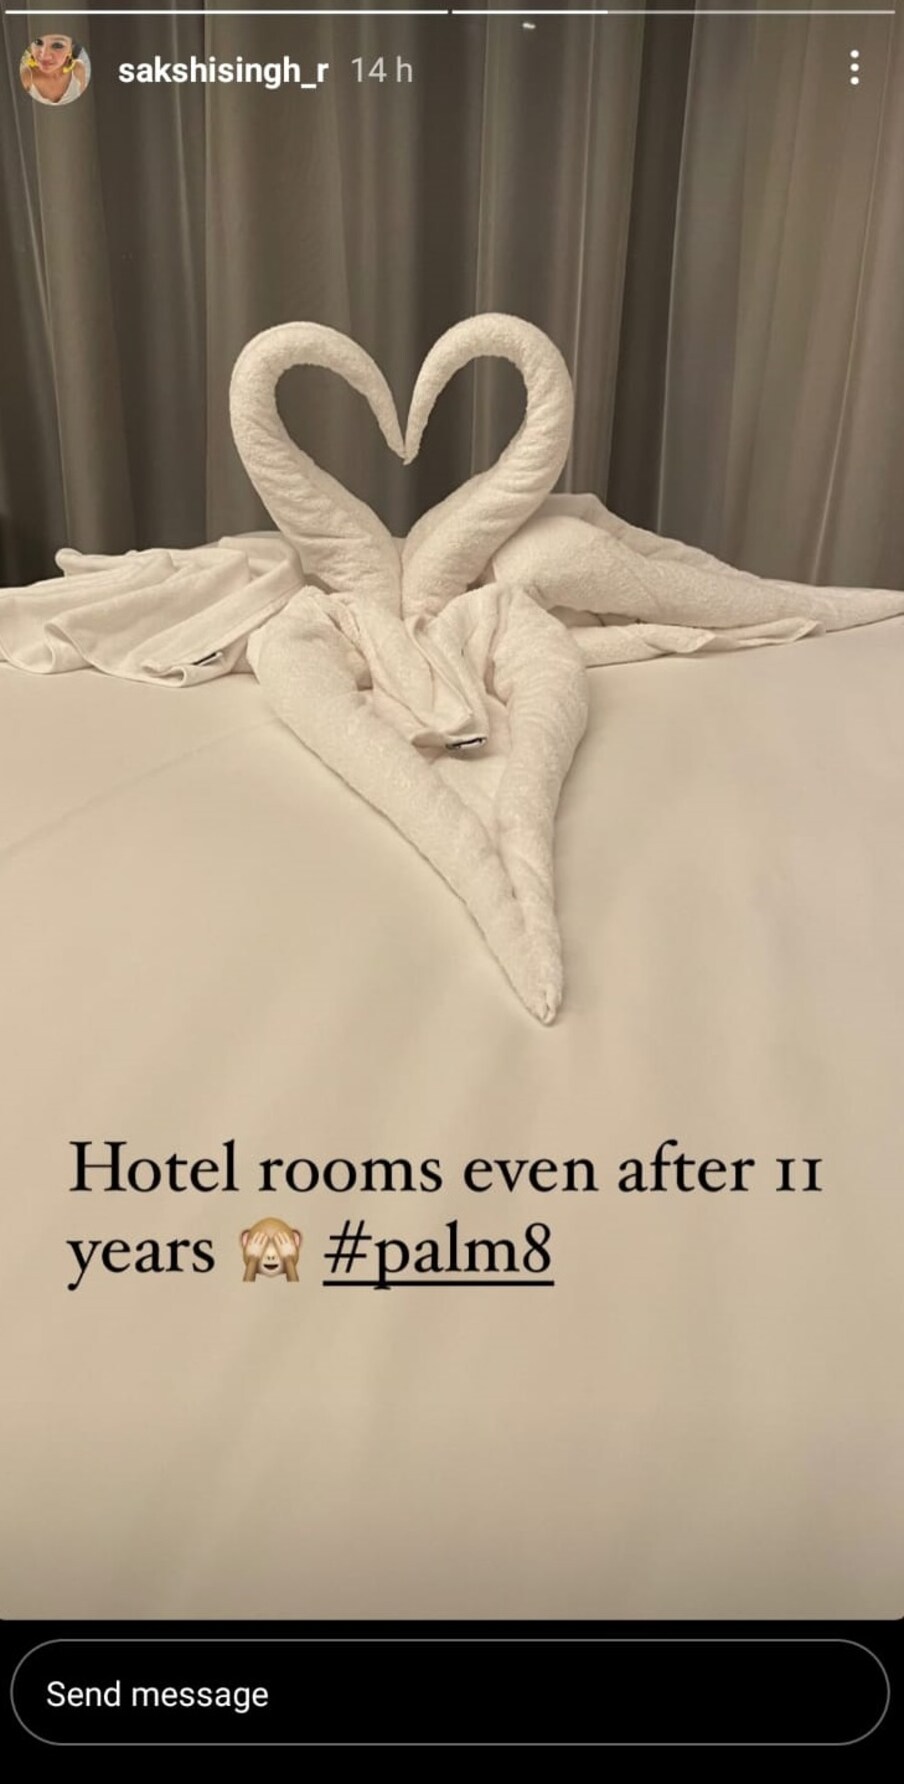  उन्‍होंने तस्‍वीर शेयर करते हुए लिखा कि होटल का कमरा यहां तक की 11 साल बाद... उन्‍होंने दोनों हाथ से चेहरे को छिपाते हुए इमोजी भी लगाई .